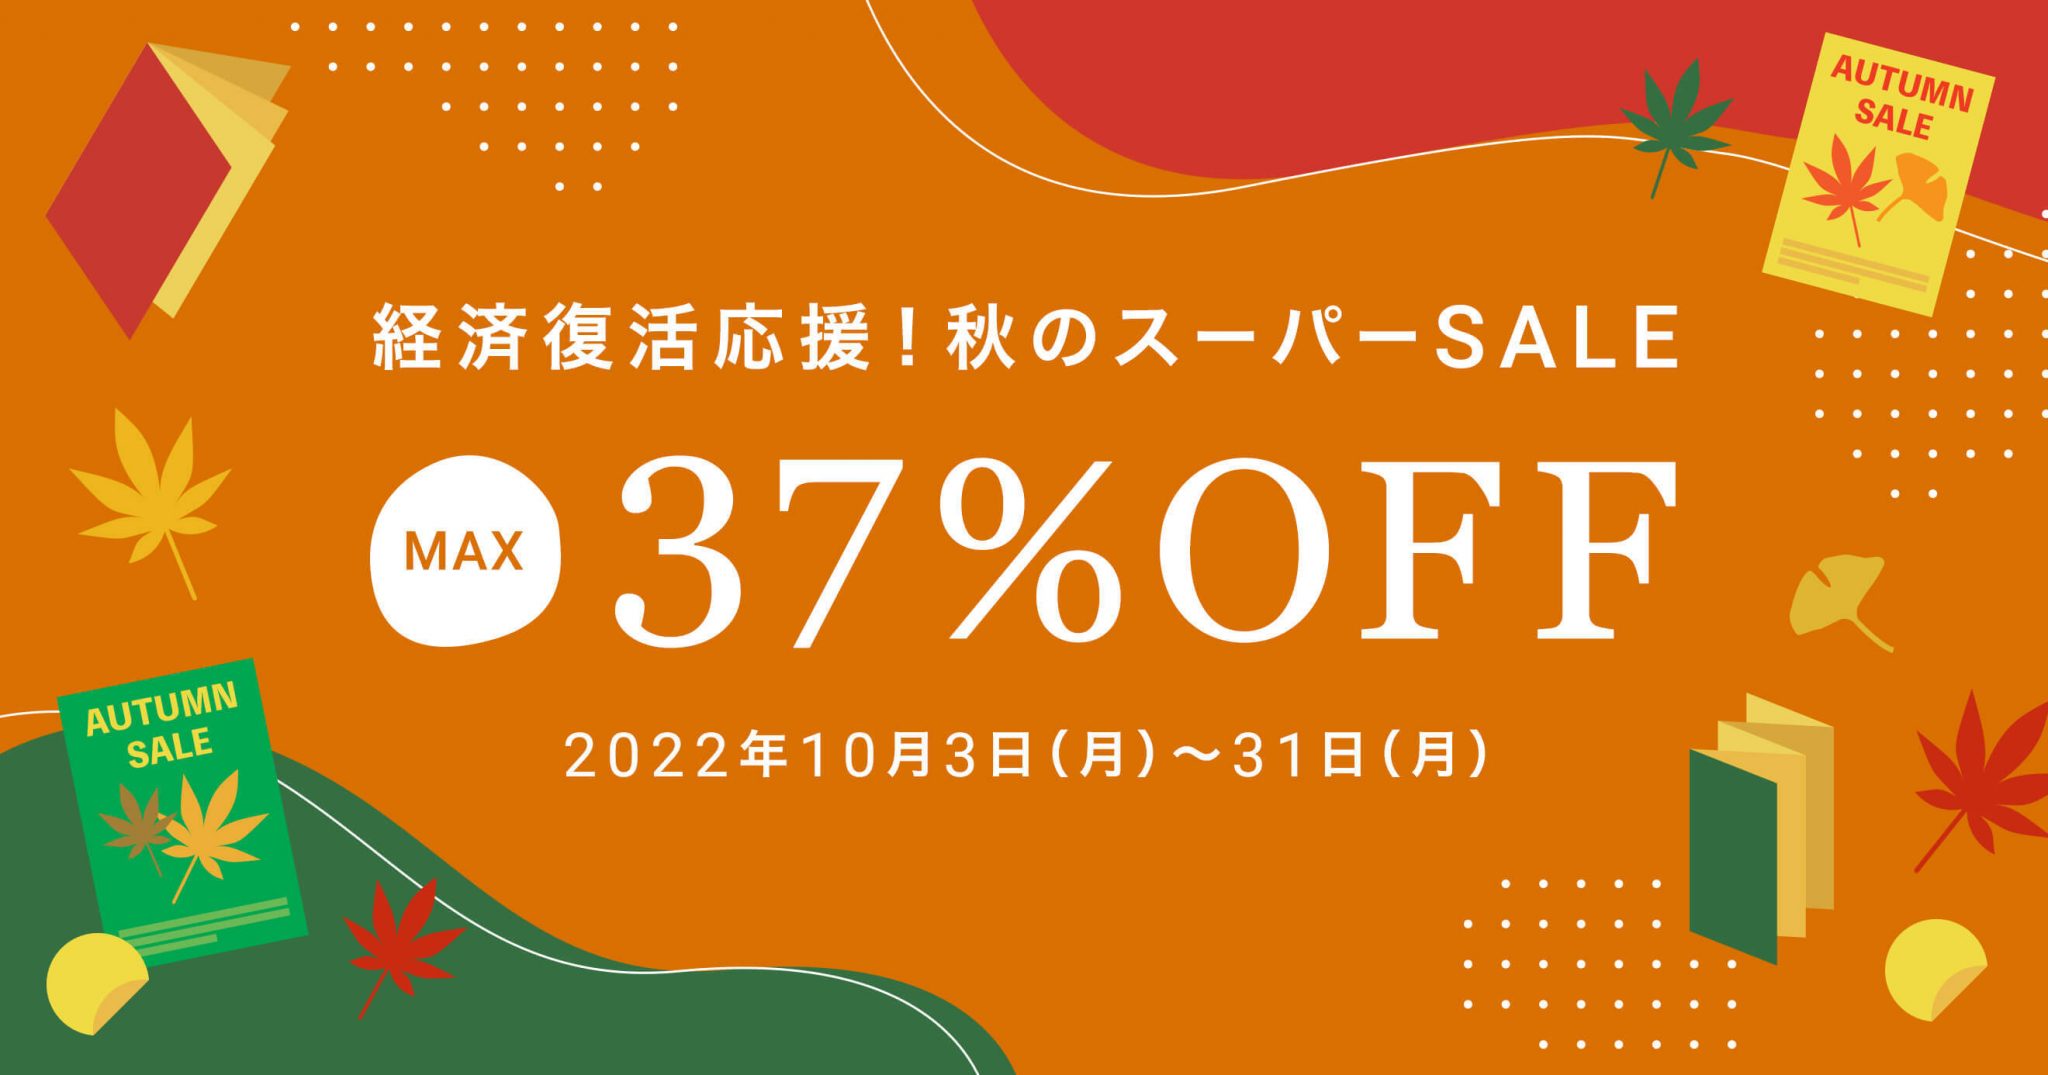 【最大37%OFF!】経済復活応援!秋のスーパーセール | ラクスルマガジン